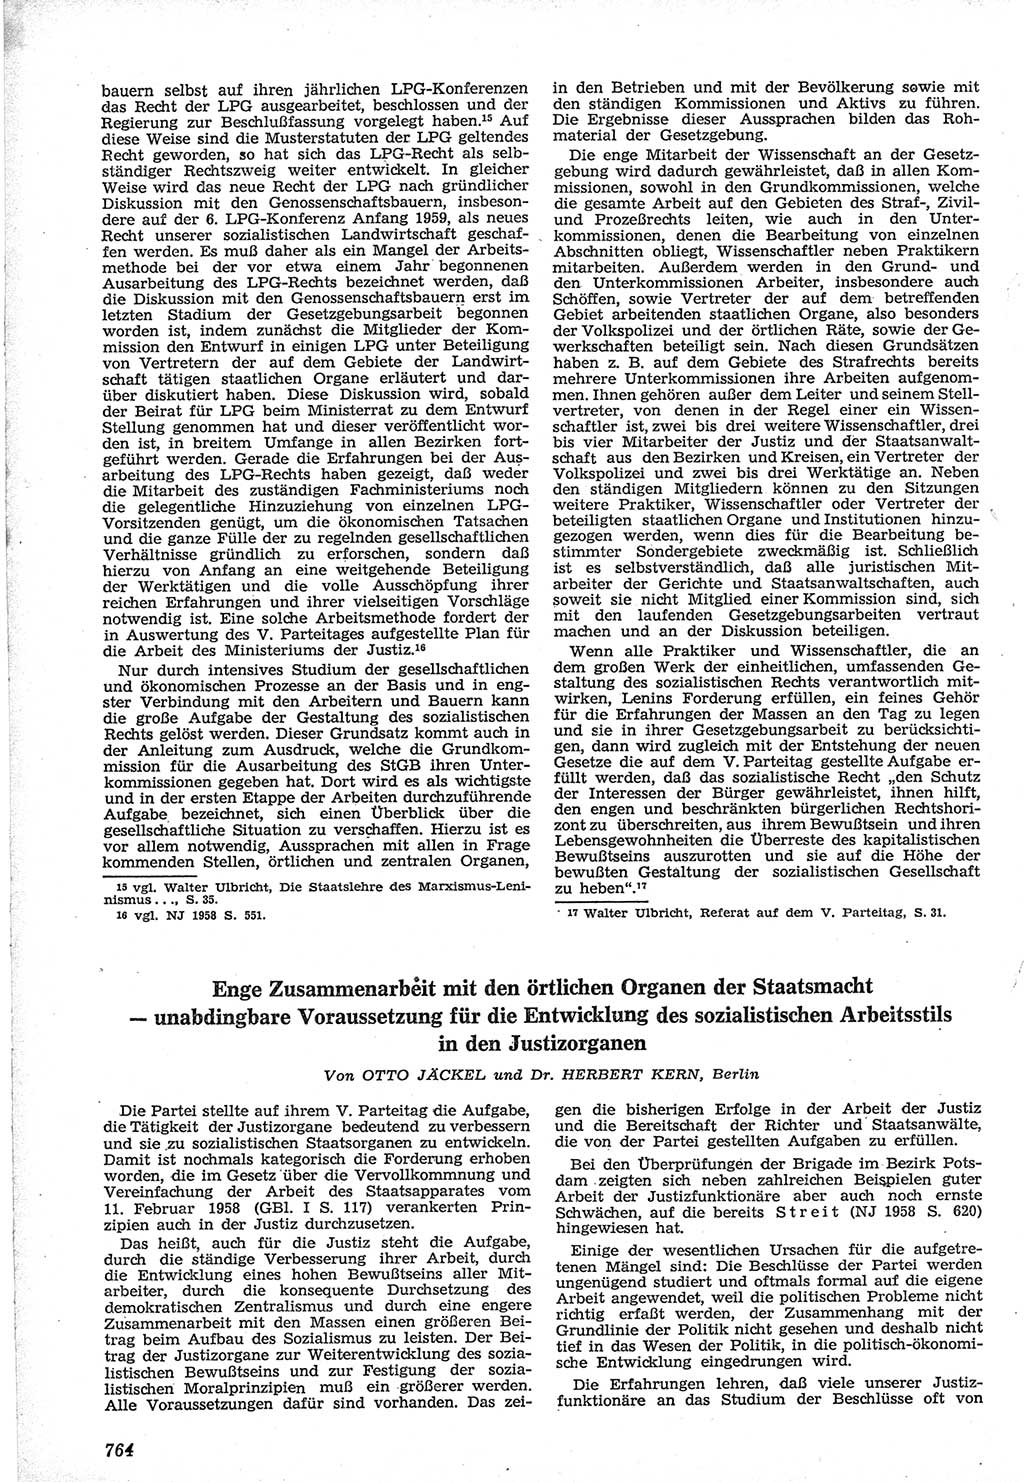 Neue Justiz (NJ), Zeitschrift für Recht und Rechtswissenschaft [Deutsche Demokratische Republik (DDR)], 12. Jahrgang 1958, Seite 764 (NJ DDR 1958, S. 764)